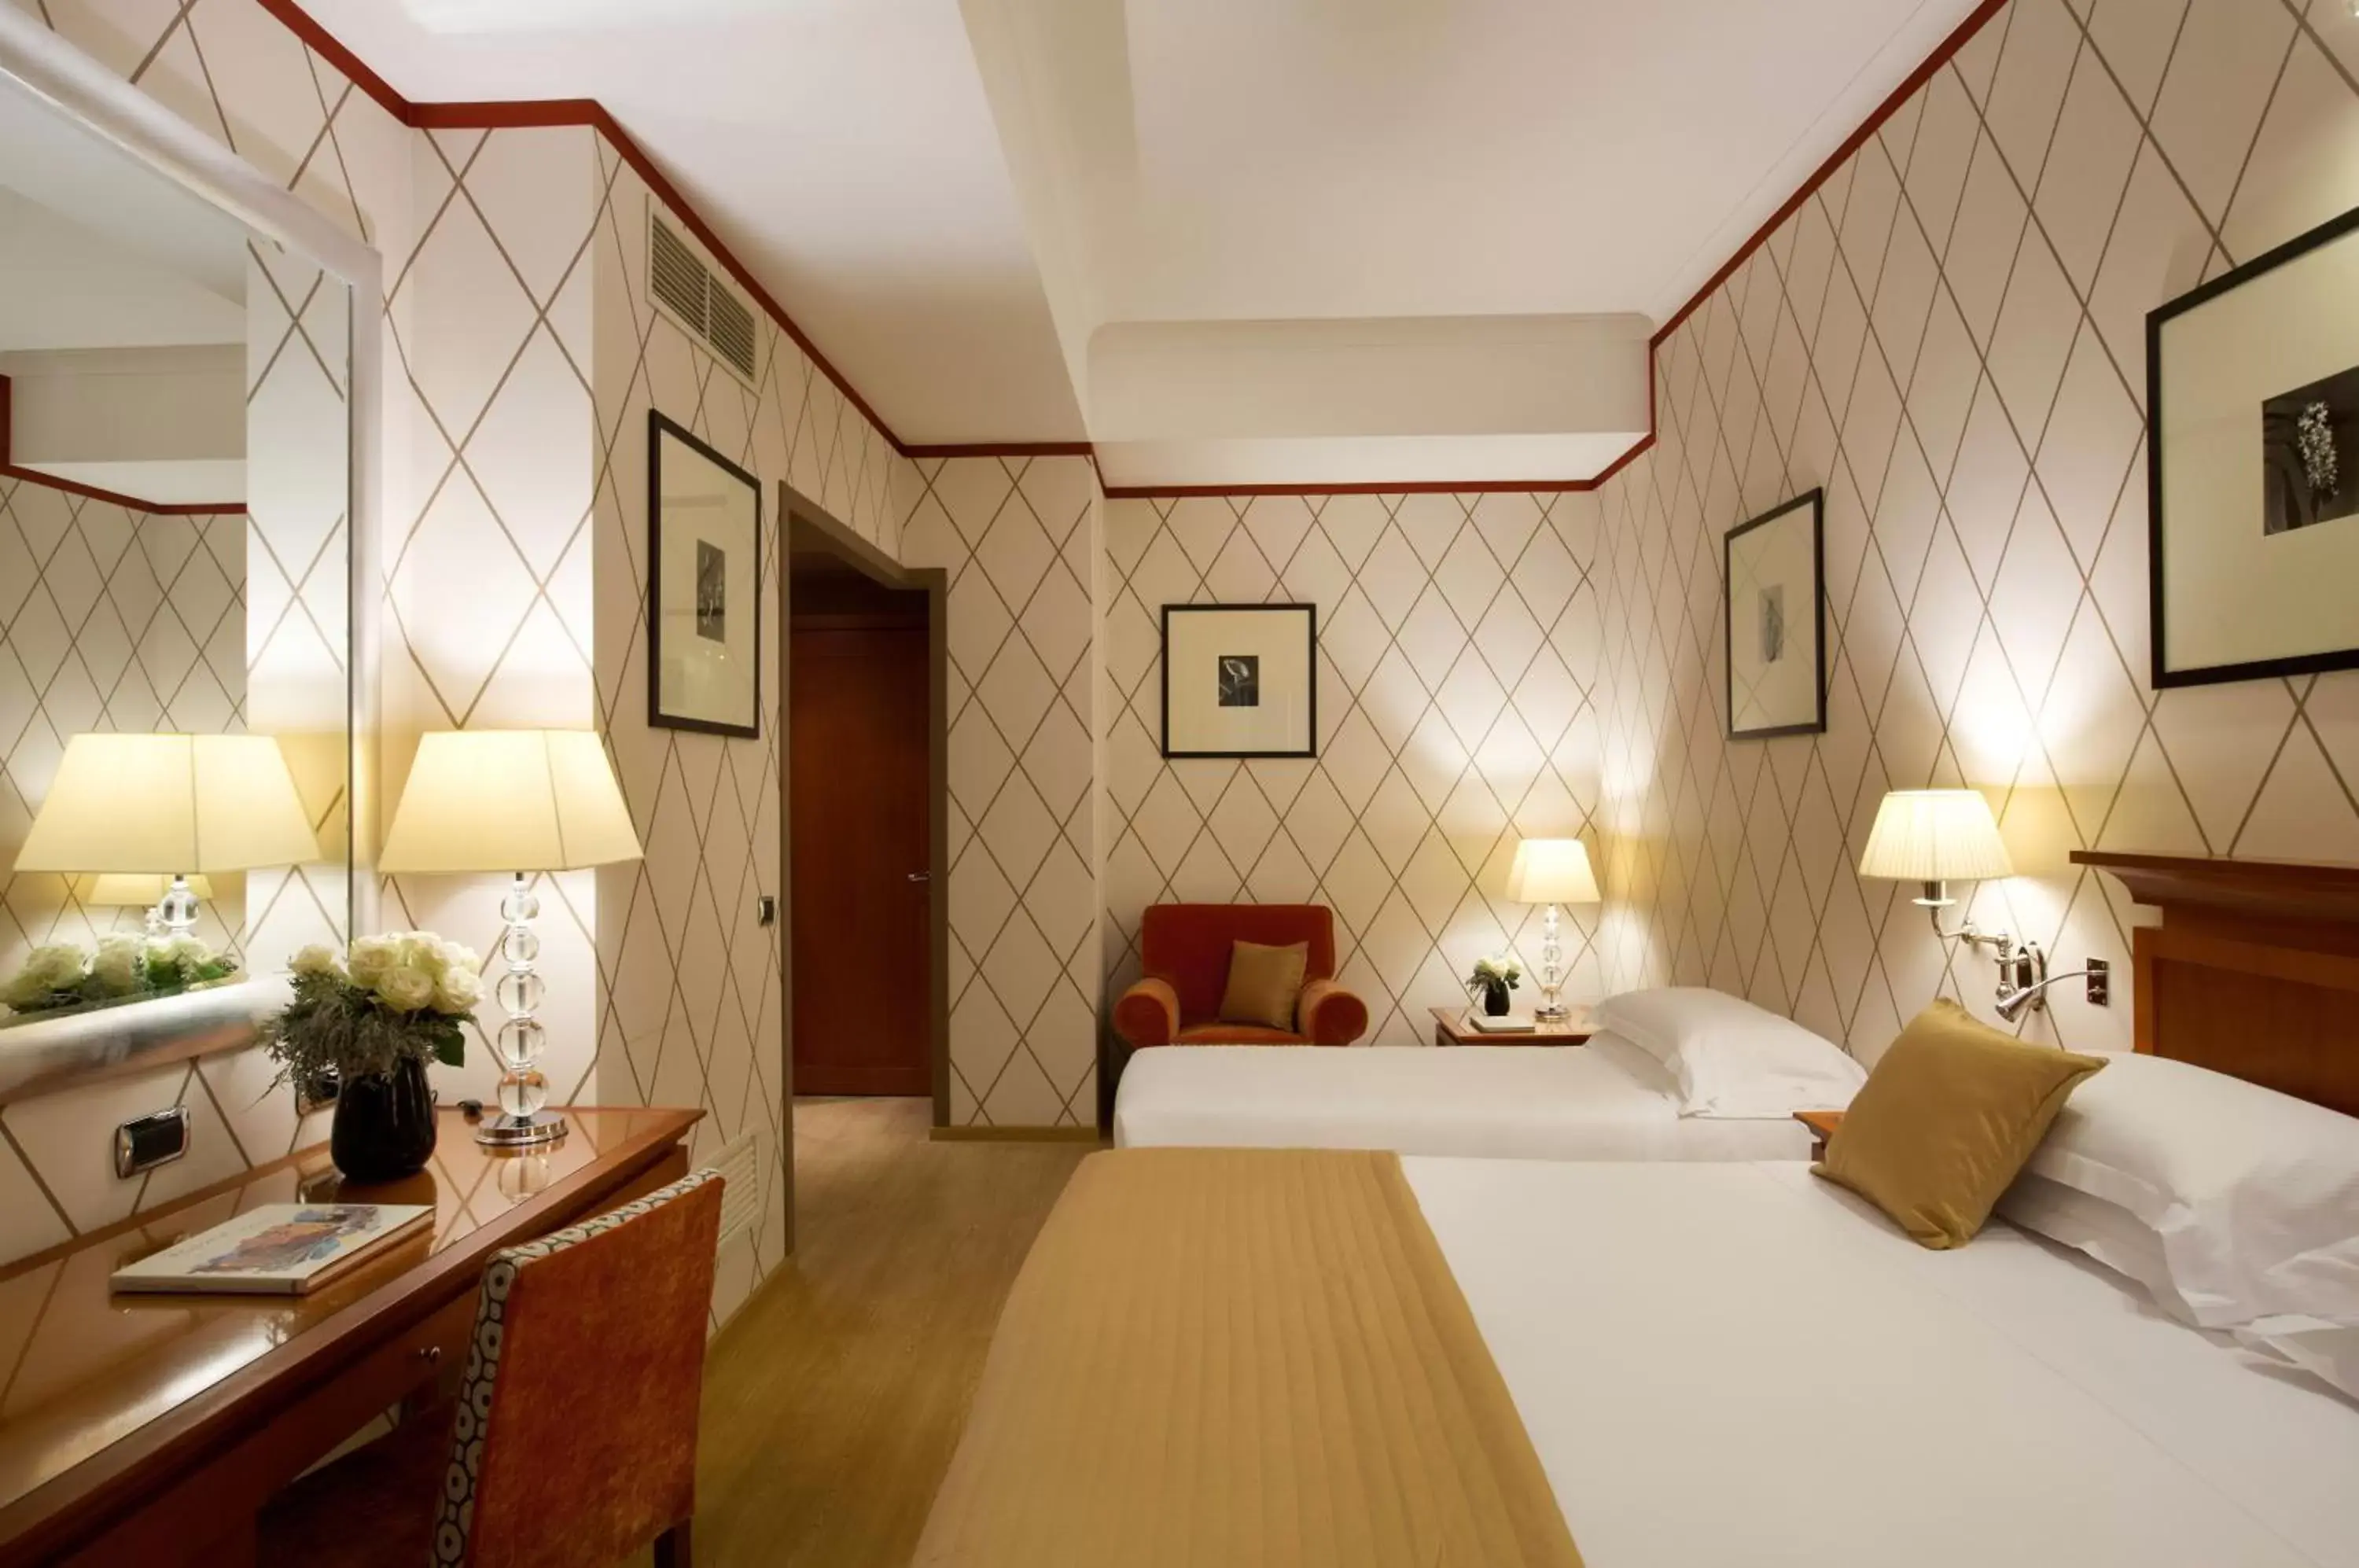 Triple Room in Starhotels Metropole